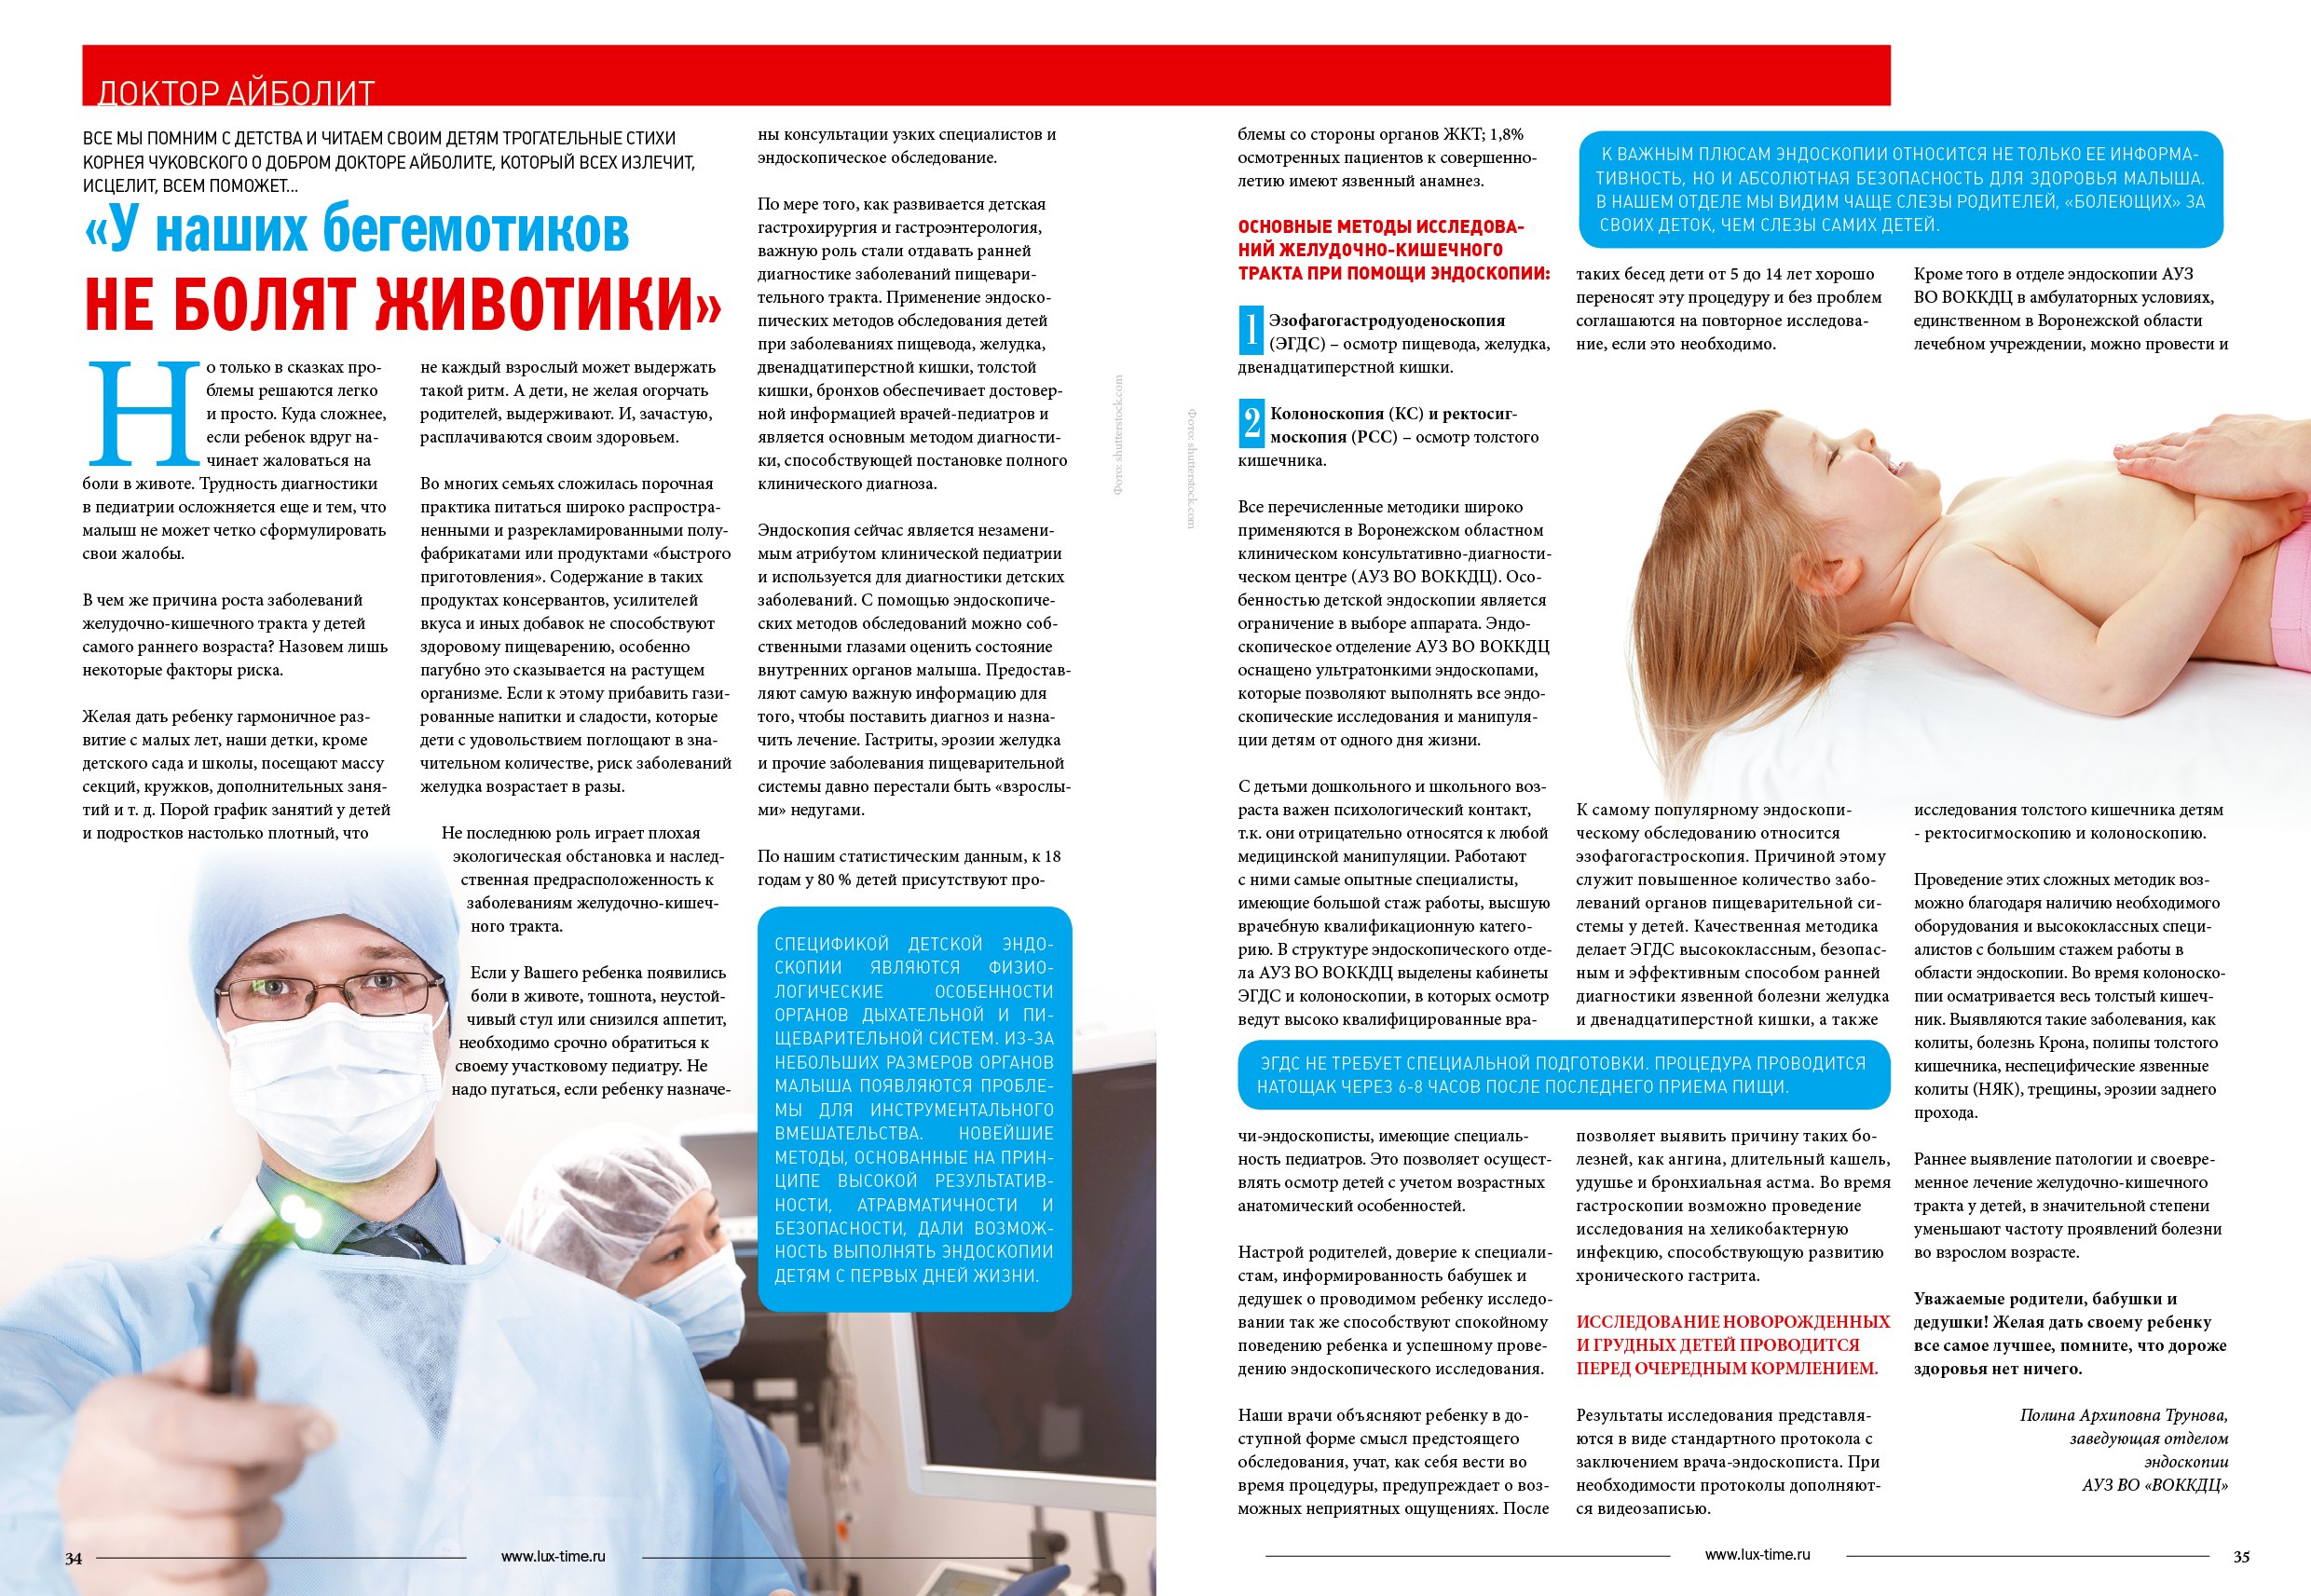 Эндоскопия реклама. Medicine Life журнал.